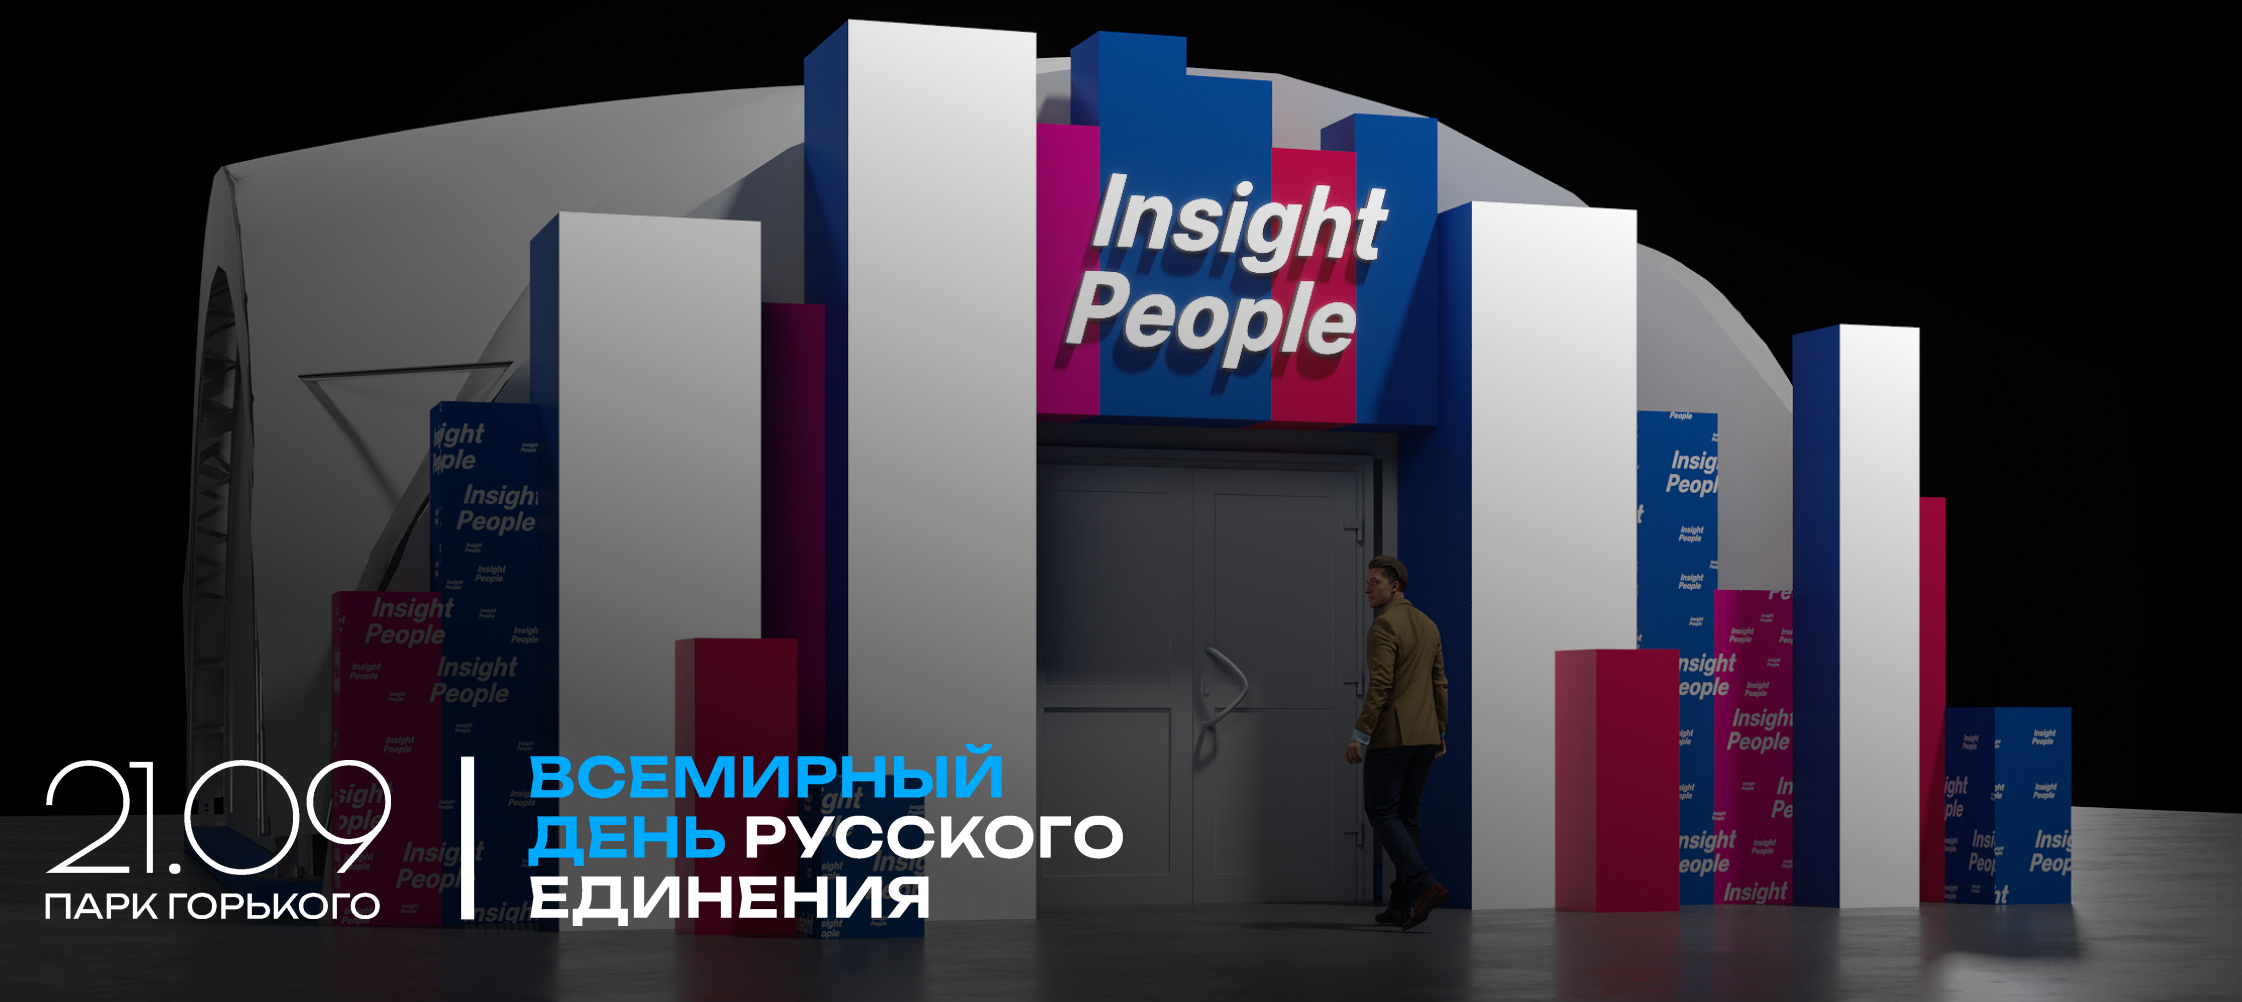 фото: Резиденты Insight People выступят на Всемирном дне русского единения